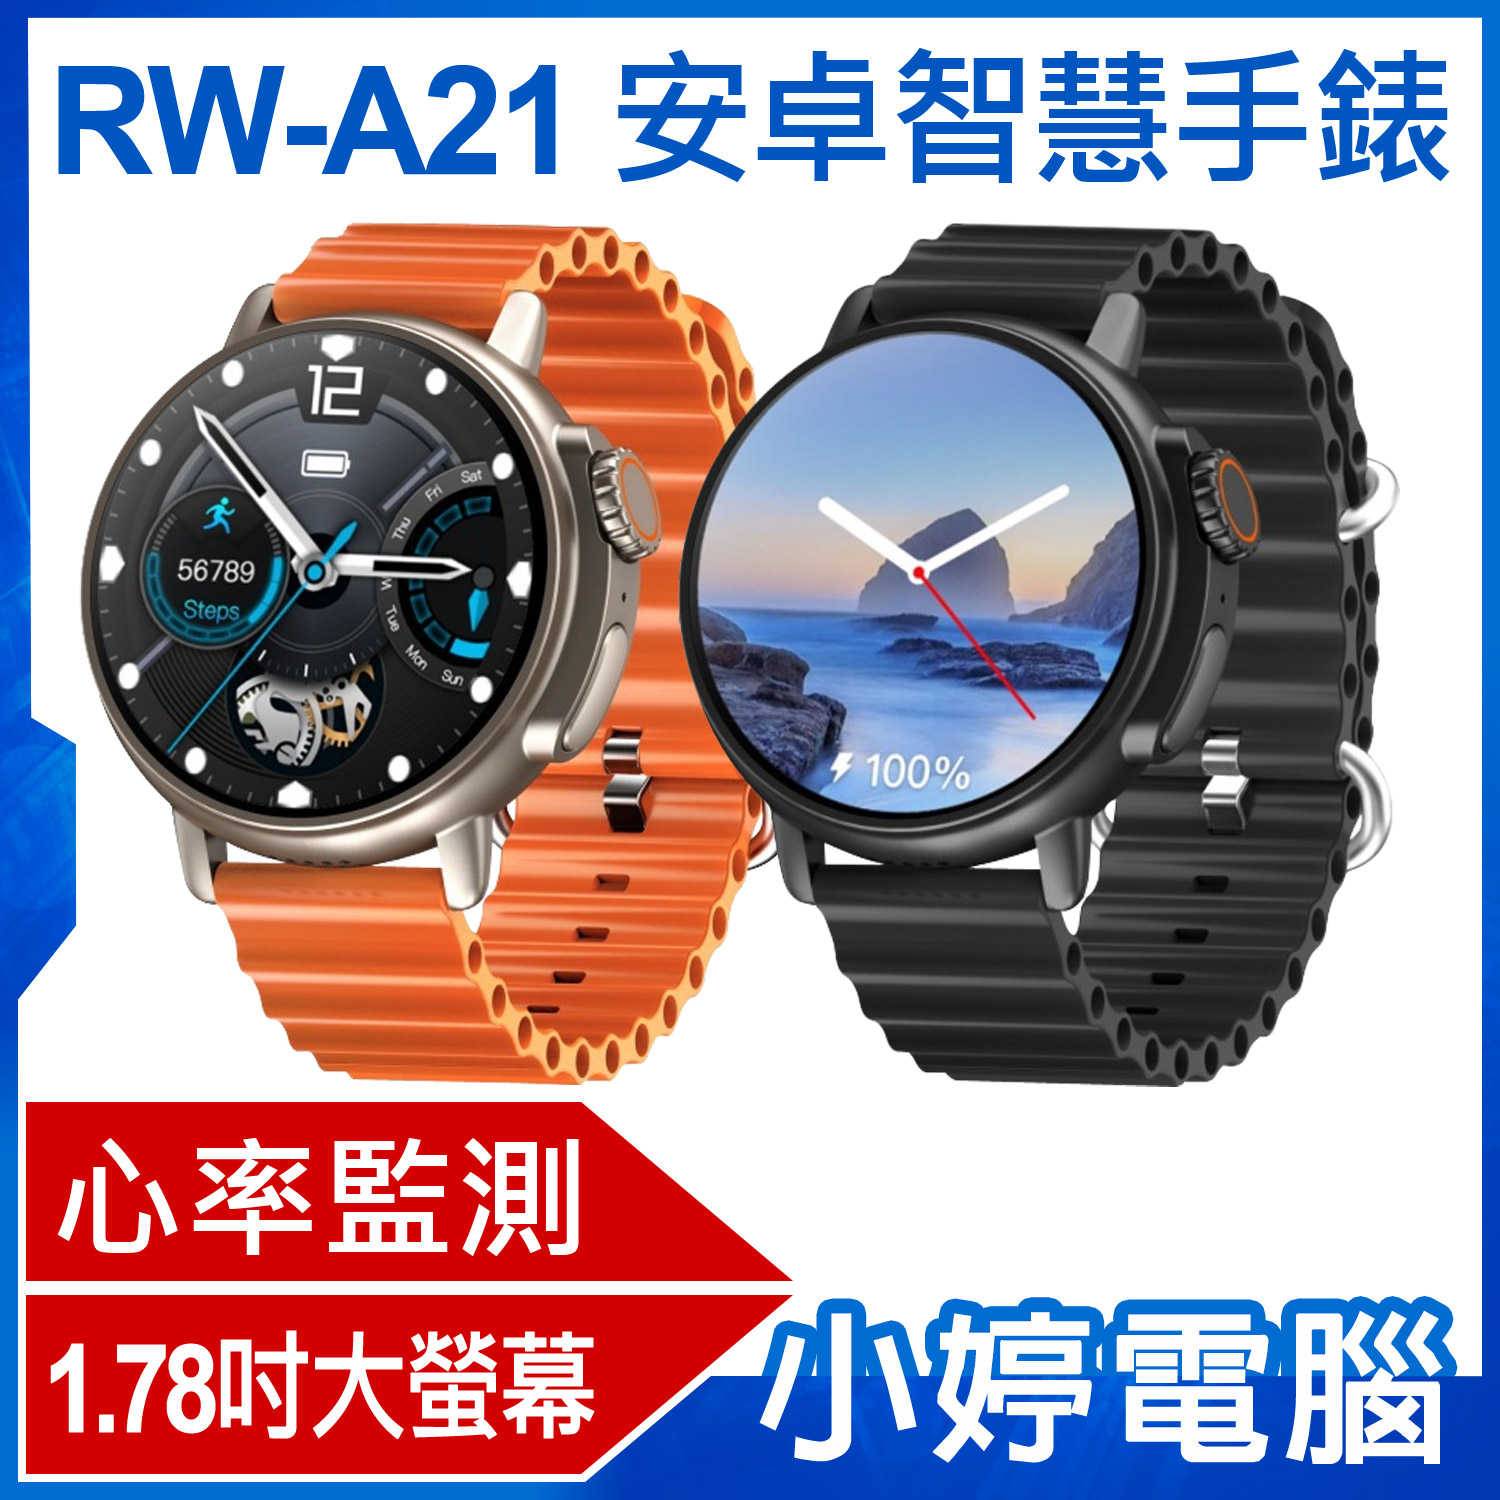 【小婷電腦】RW-A21 安卓智慧手錶 1.78吋大螢幕 心率監測 IPX67生活防水 門禁卡 網路通話